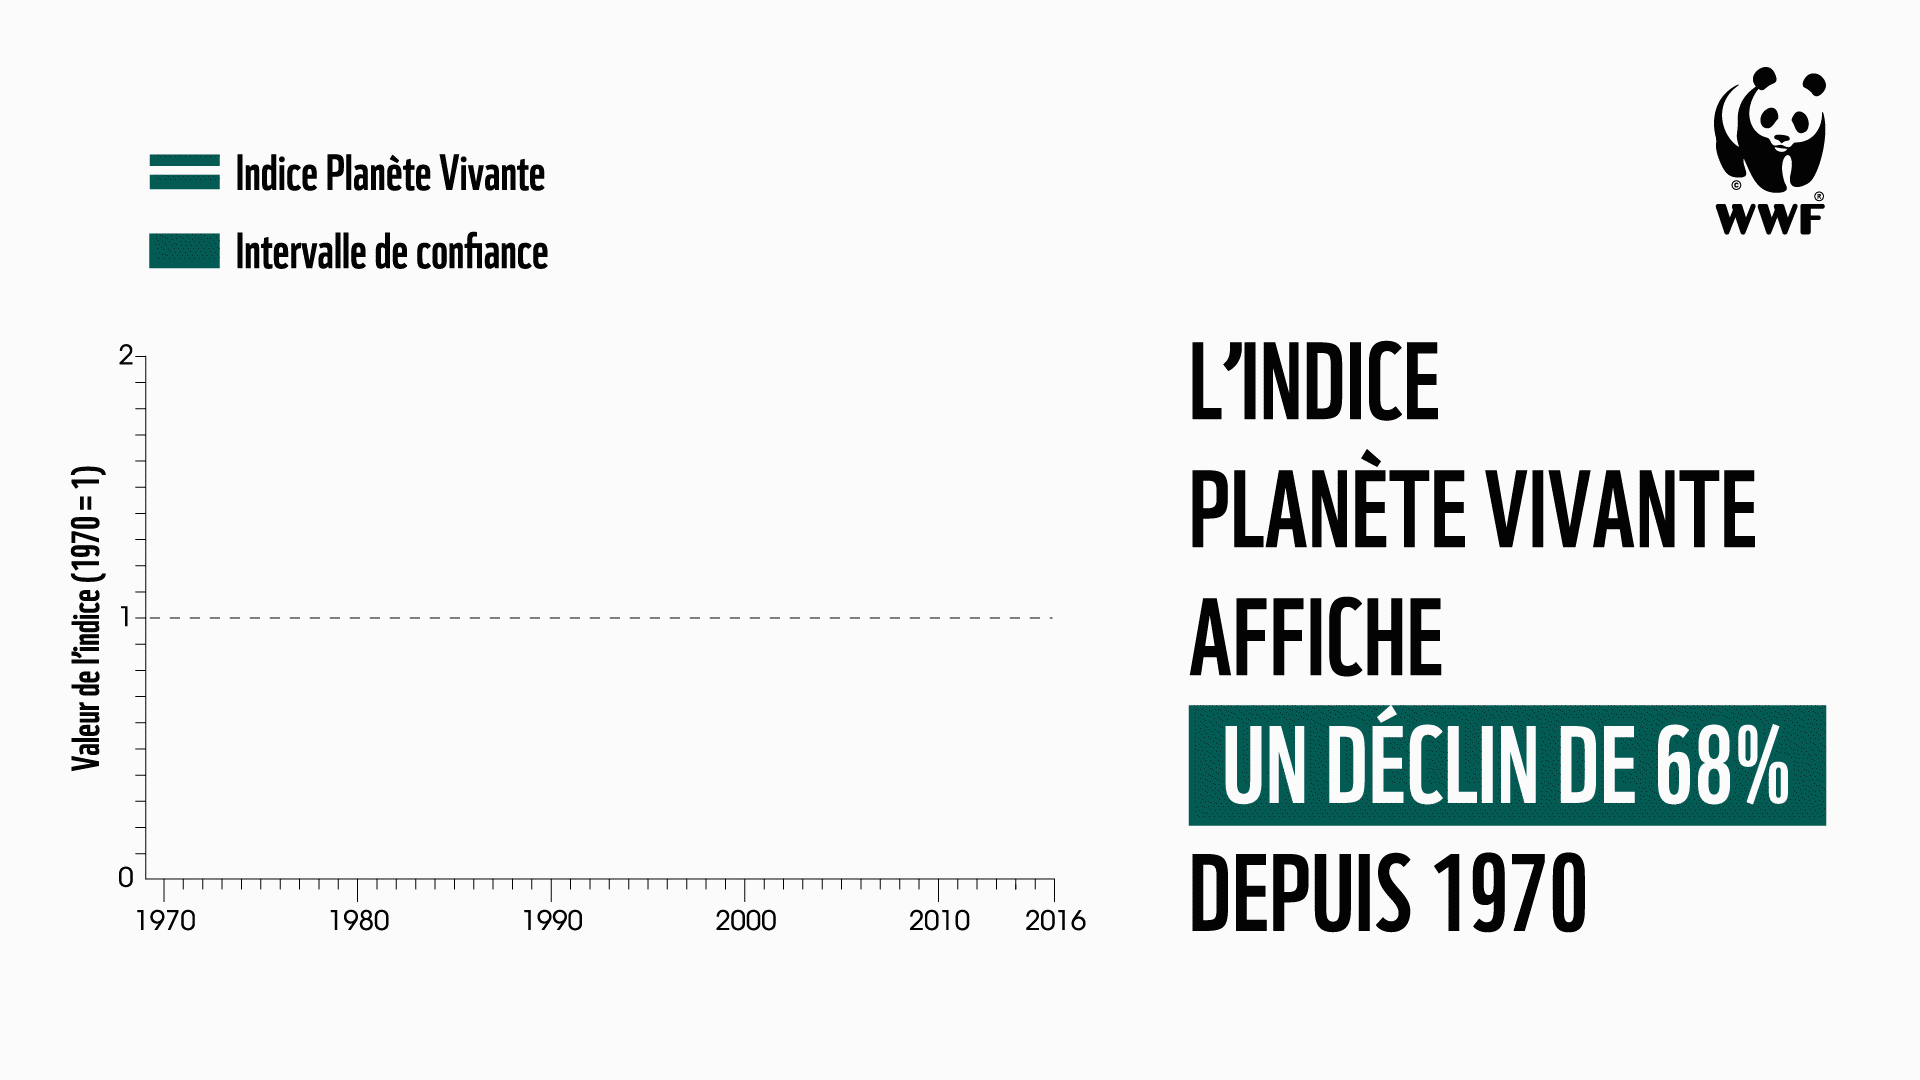 L'indice Planète Vivante 2020 affiche un déclin de 68% depuis 1970